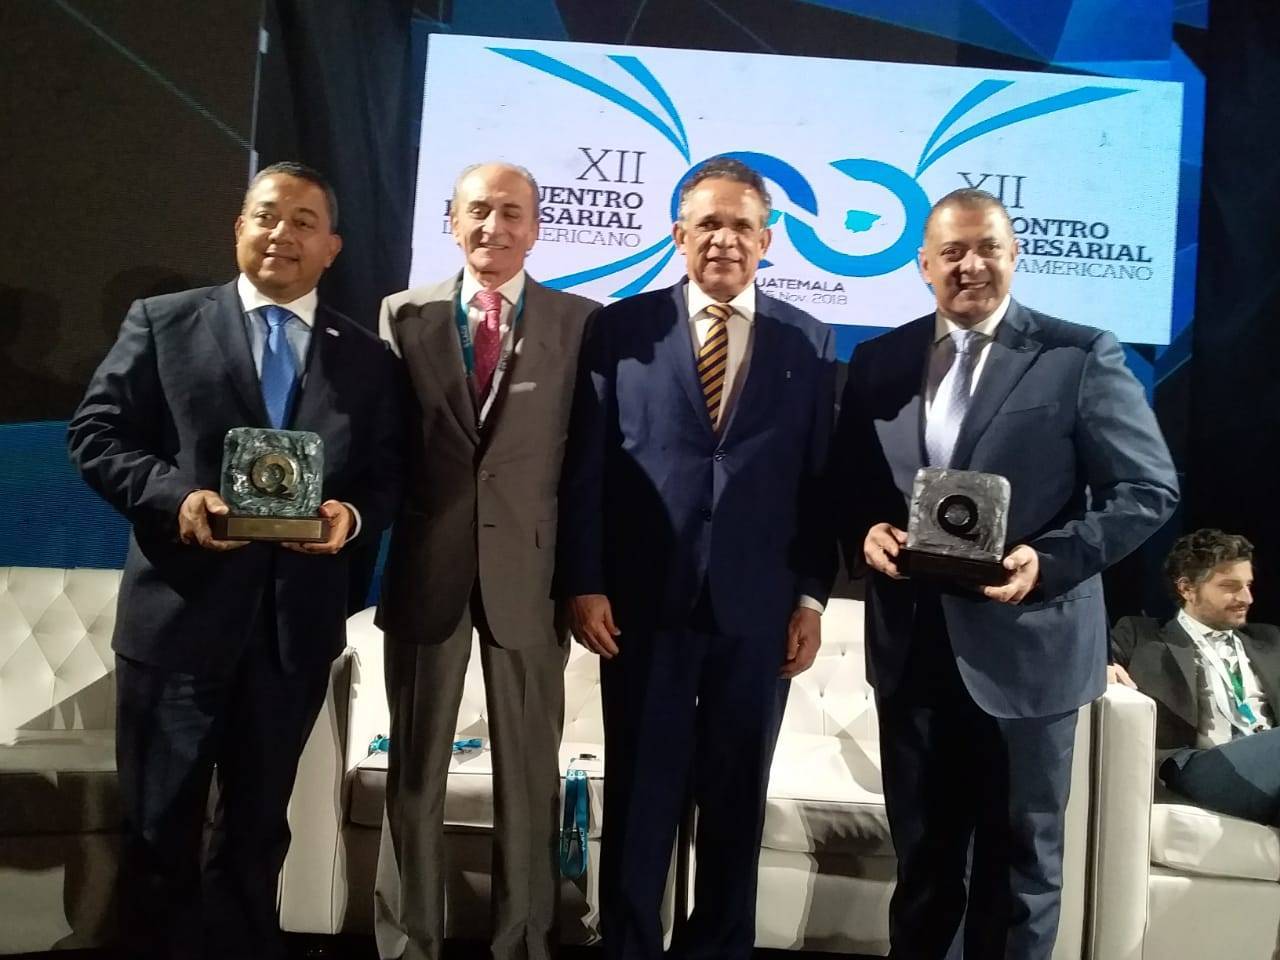 Oro obtenido por IDAC: La primera institución dominicana que recibe tan alta distinción